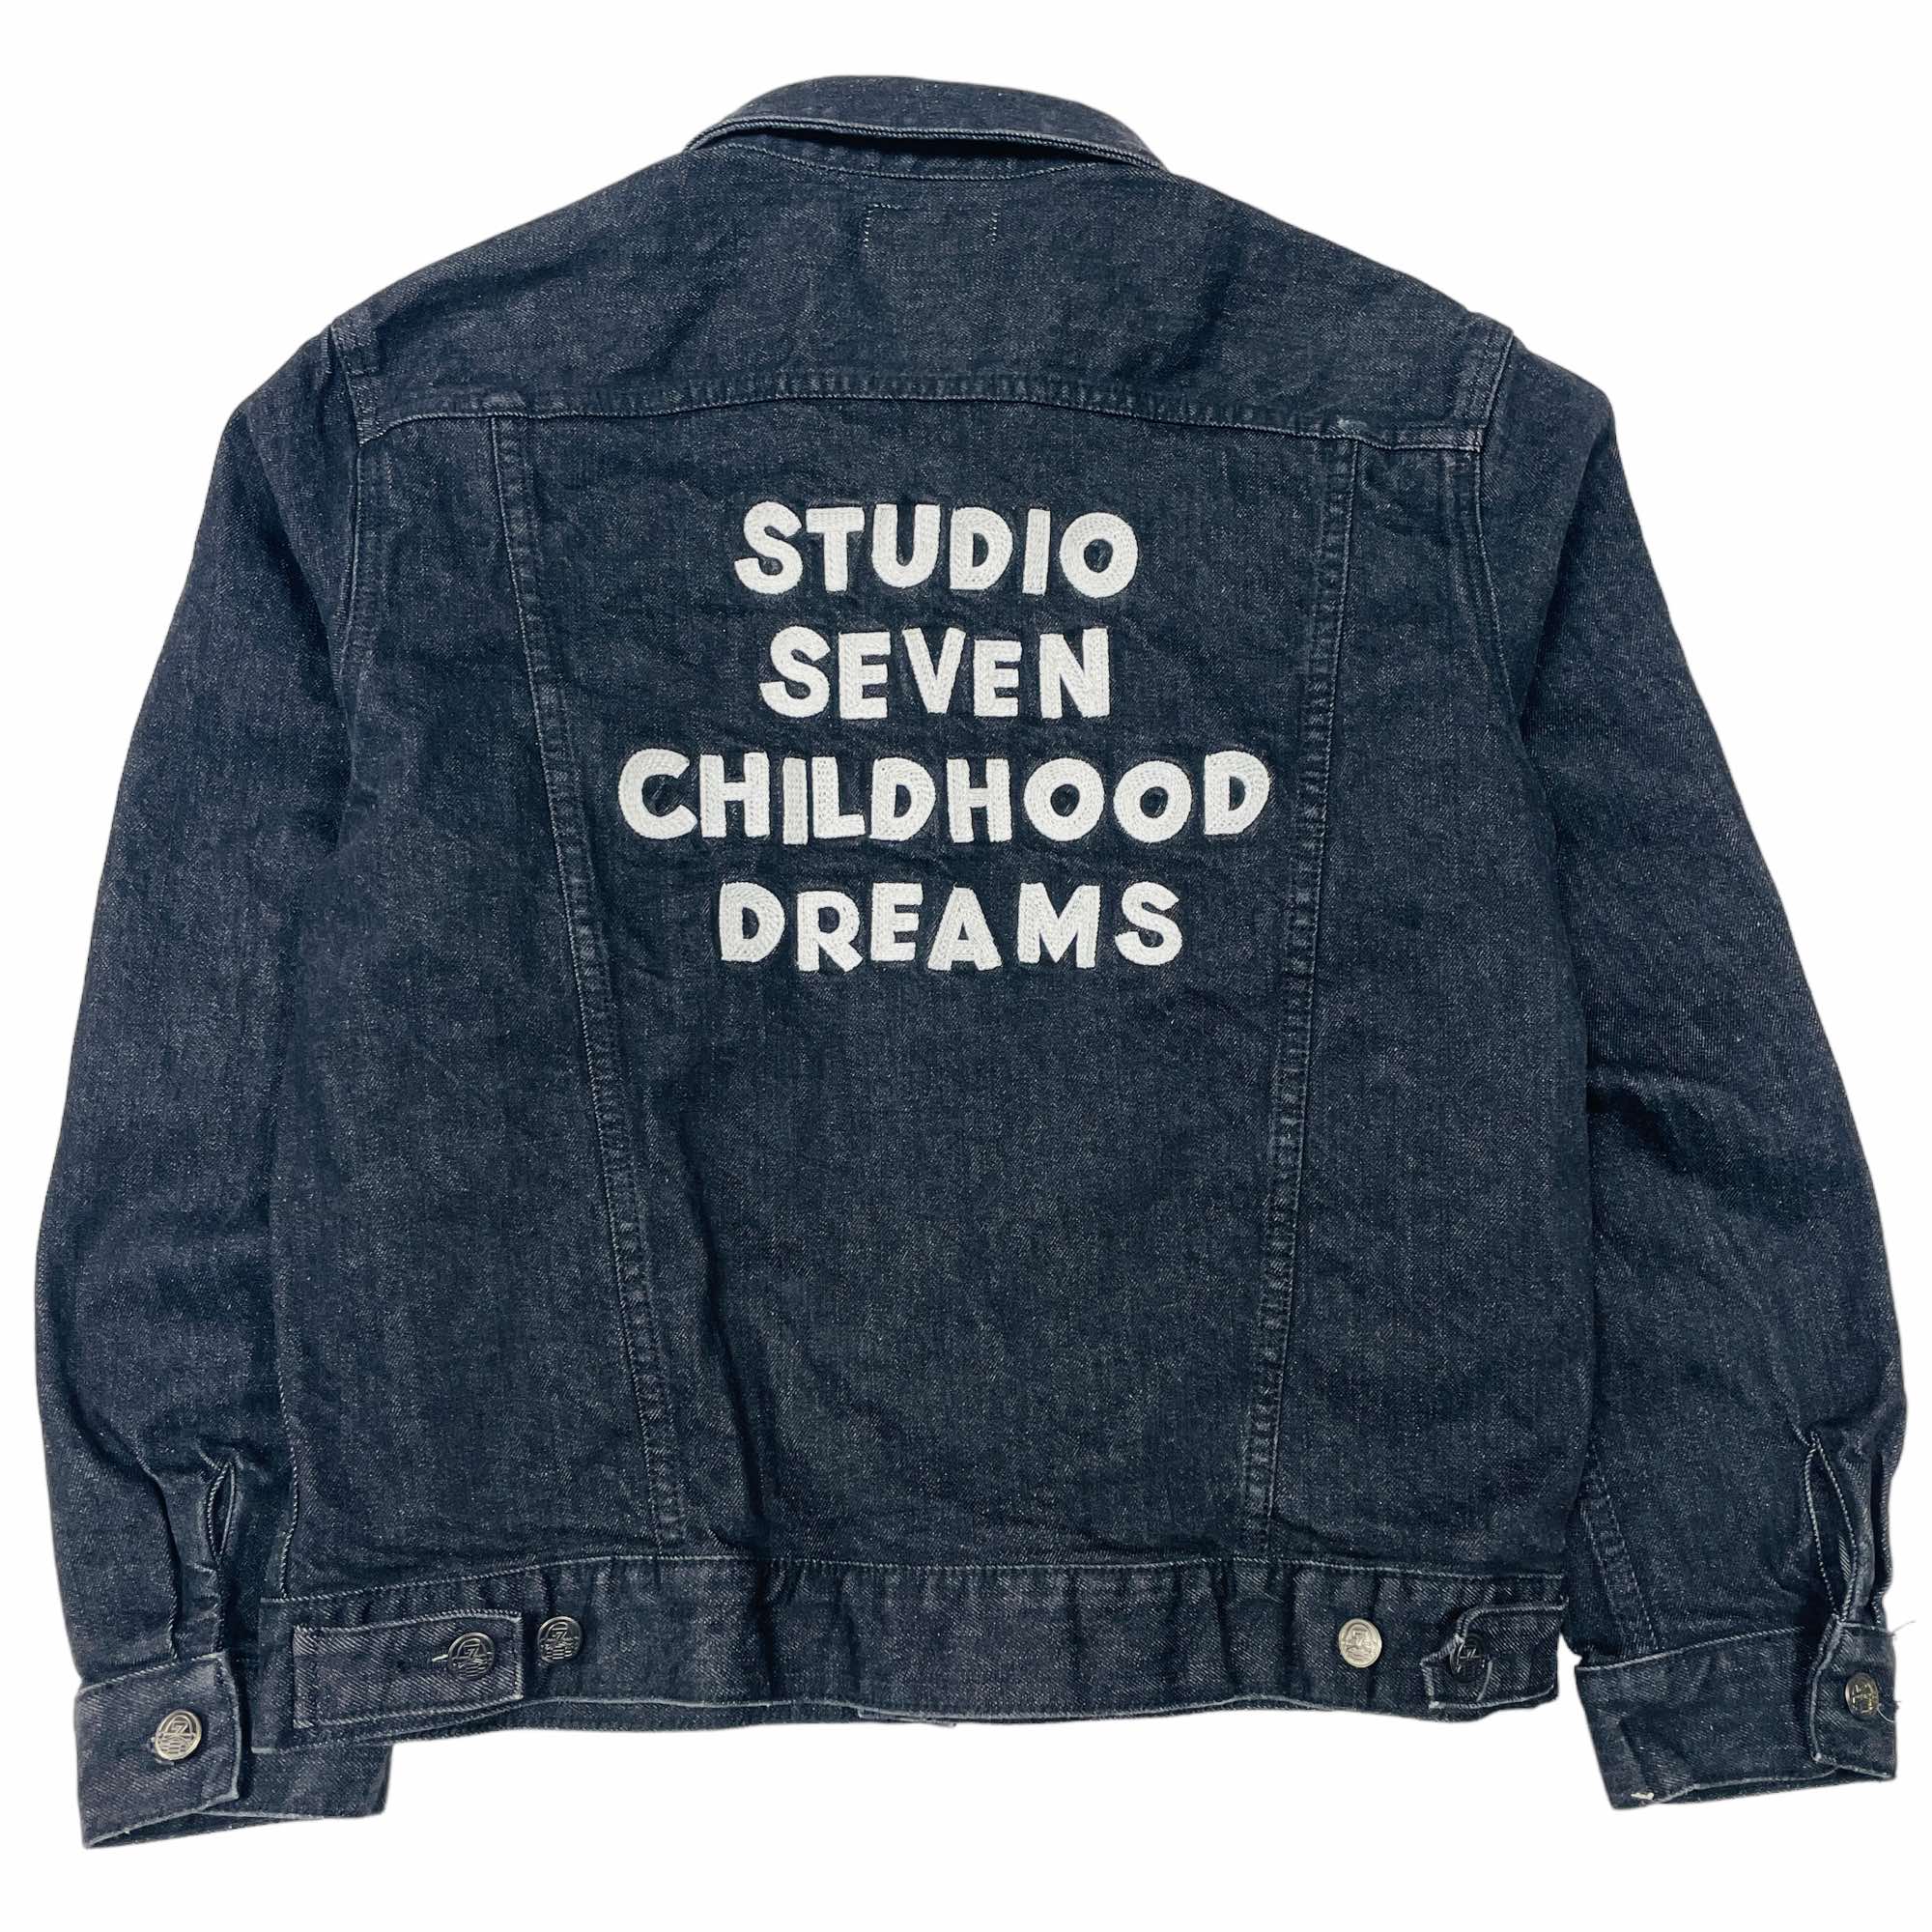 Studio Seven Childhood Dreams Denim Jacket - Large